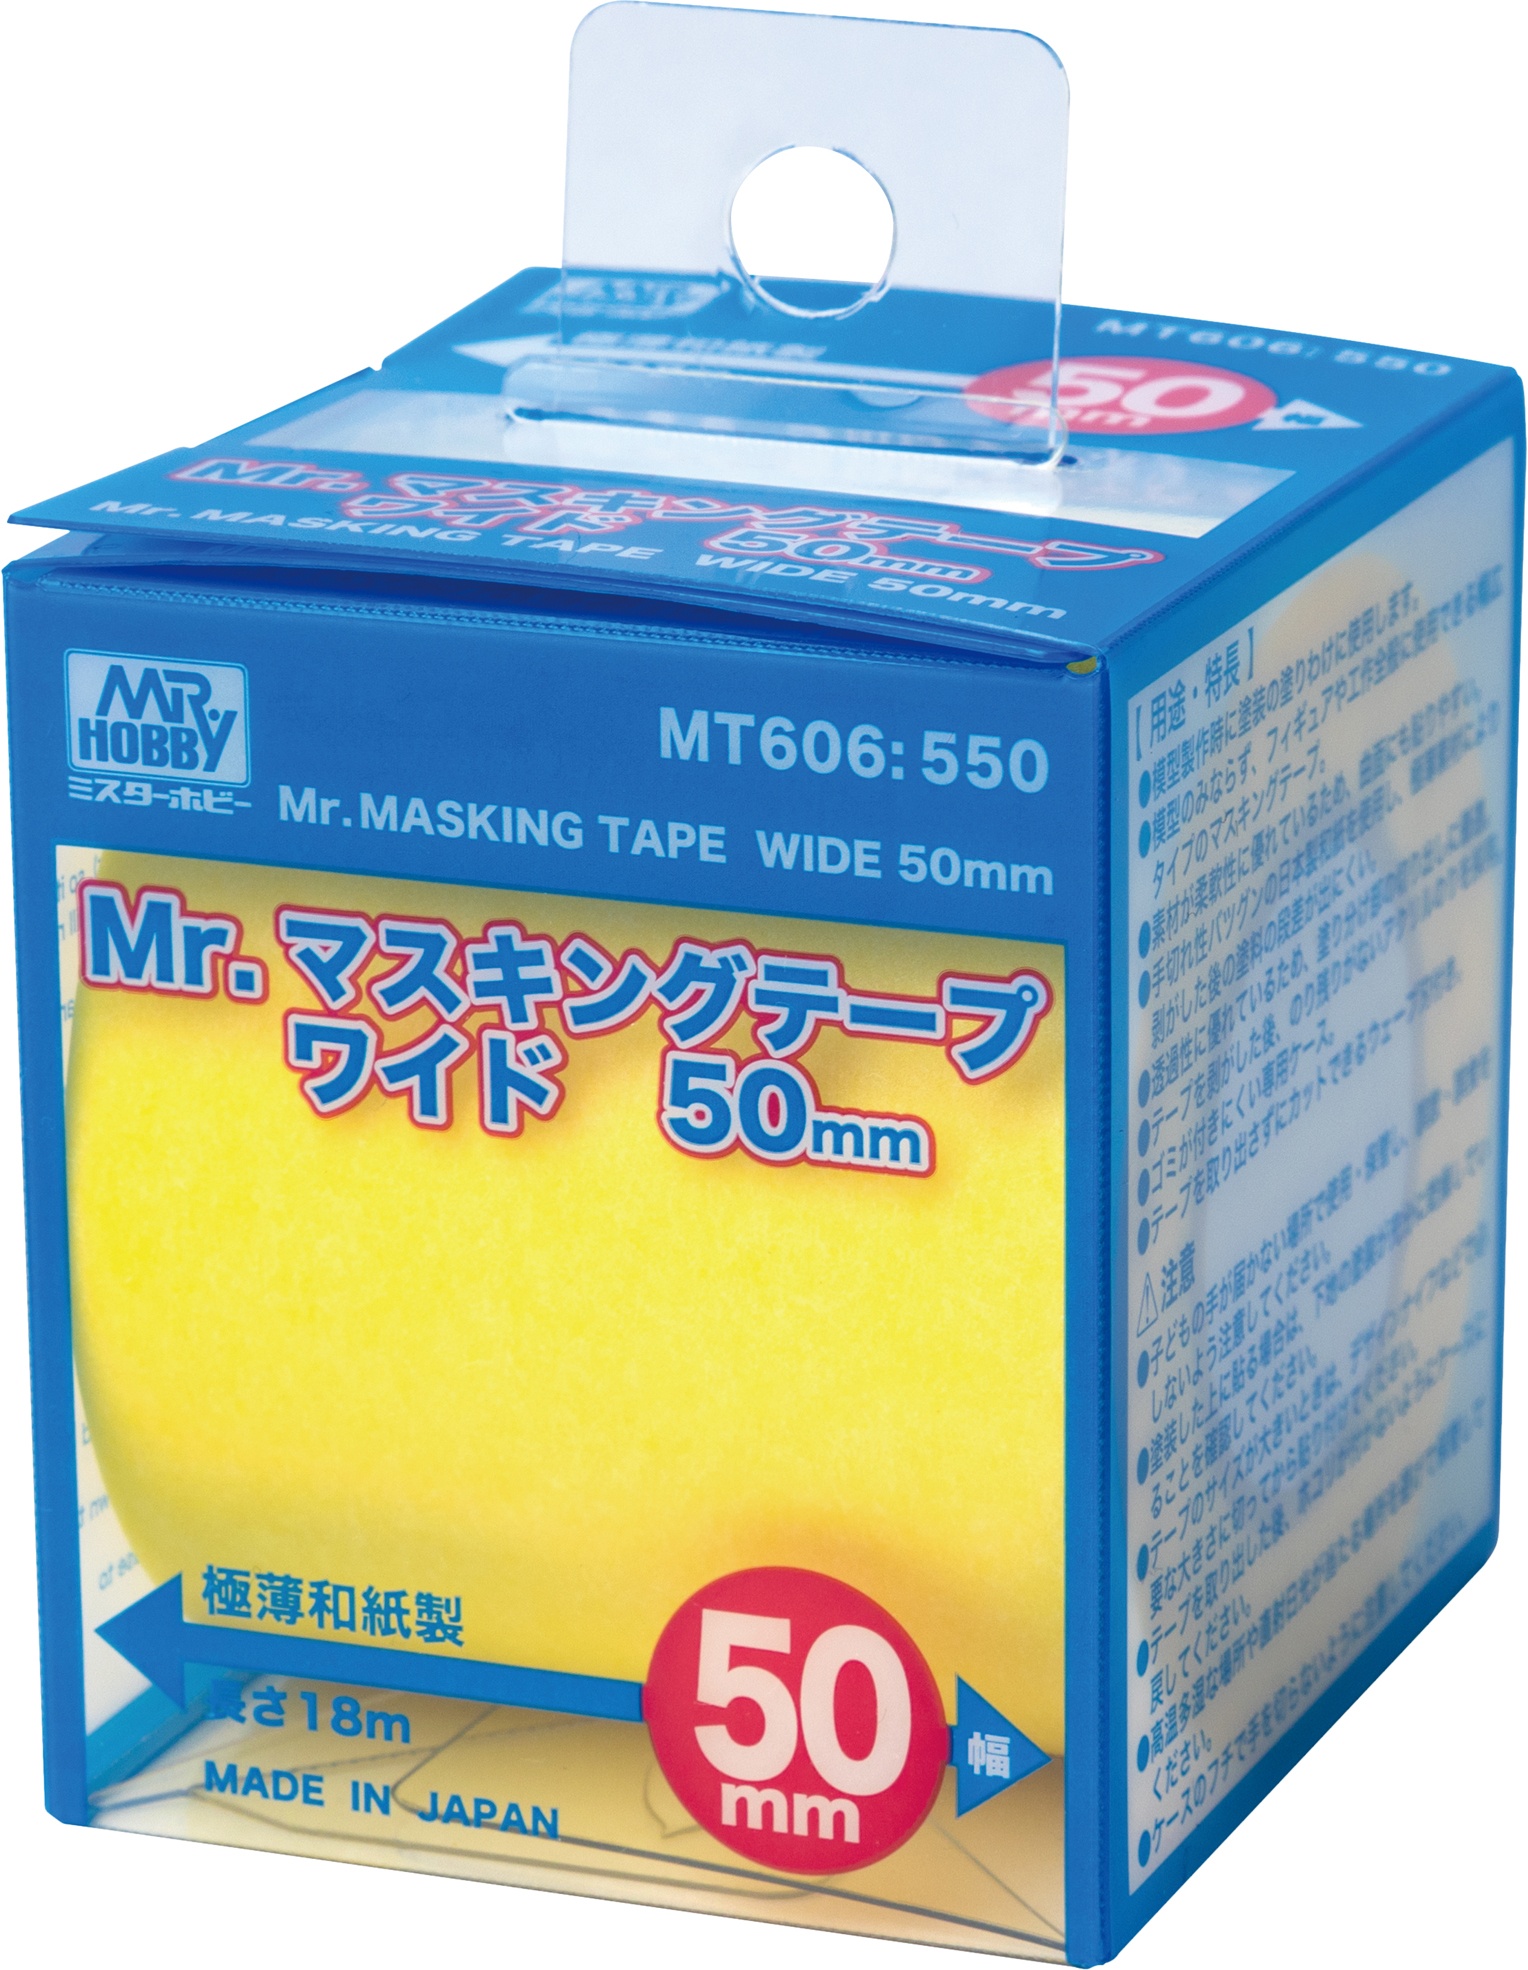 Mr. Masking Tape Wide 50mm